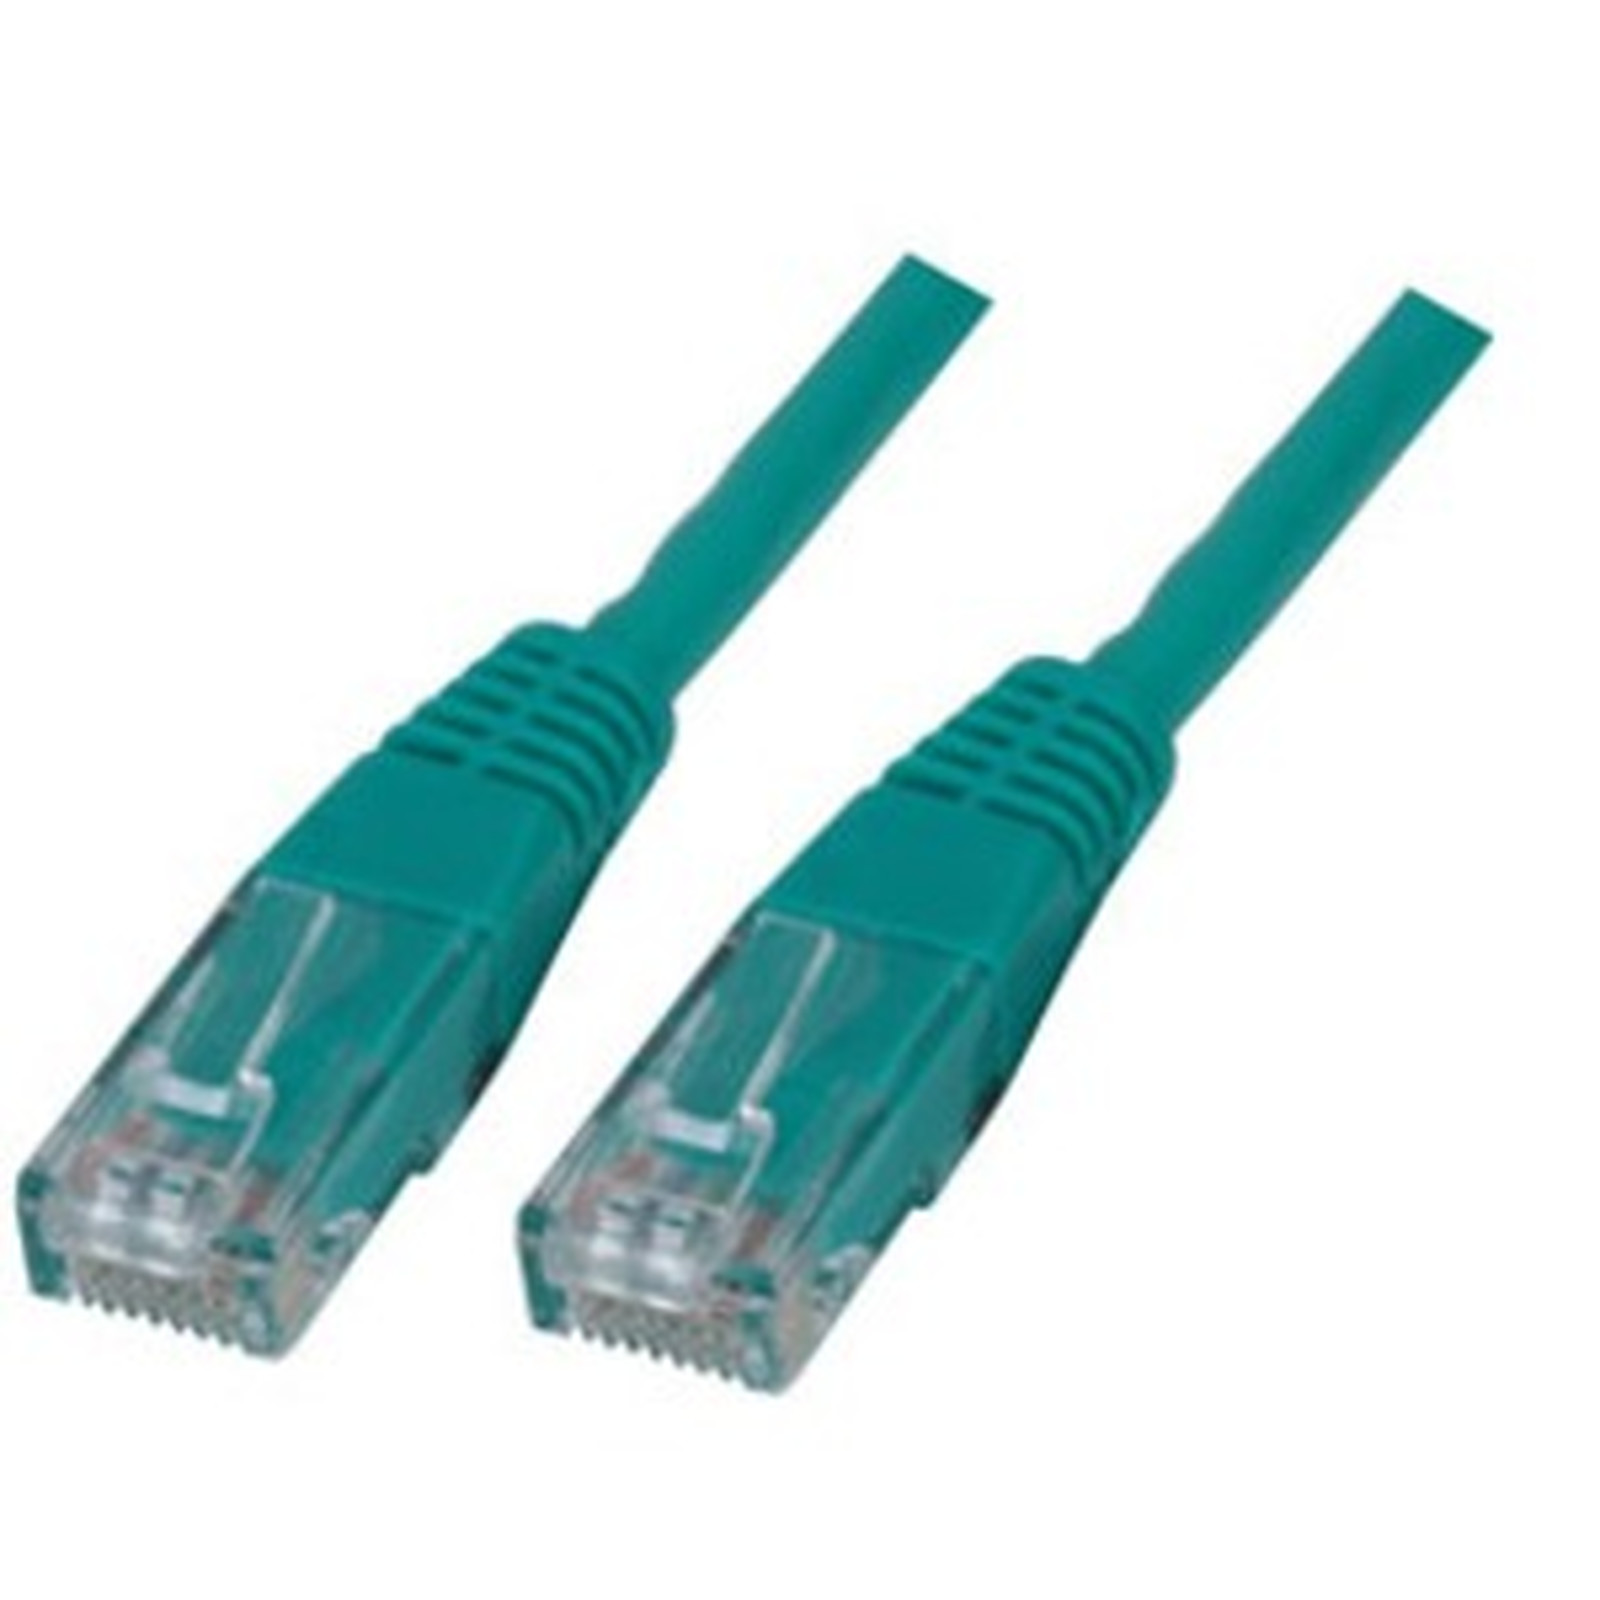 Cable RJ45 categorie 6 U/UTP 10 m (Vert) - Cable RJ45 Generique